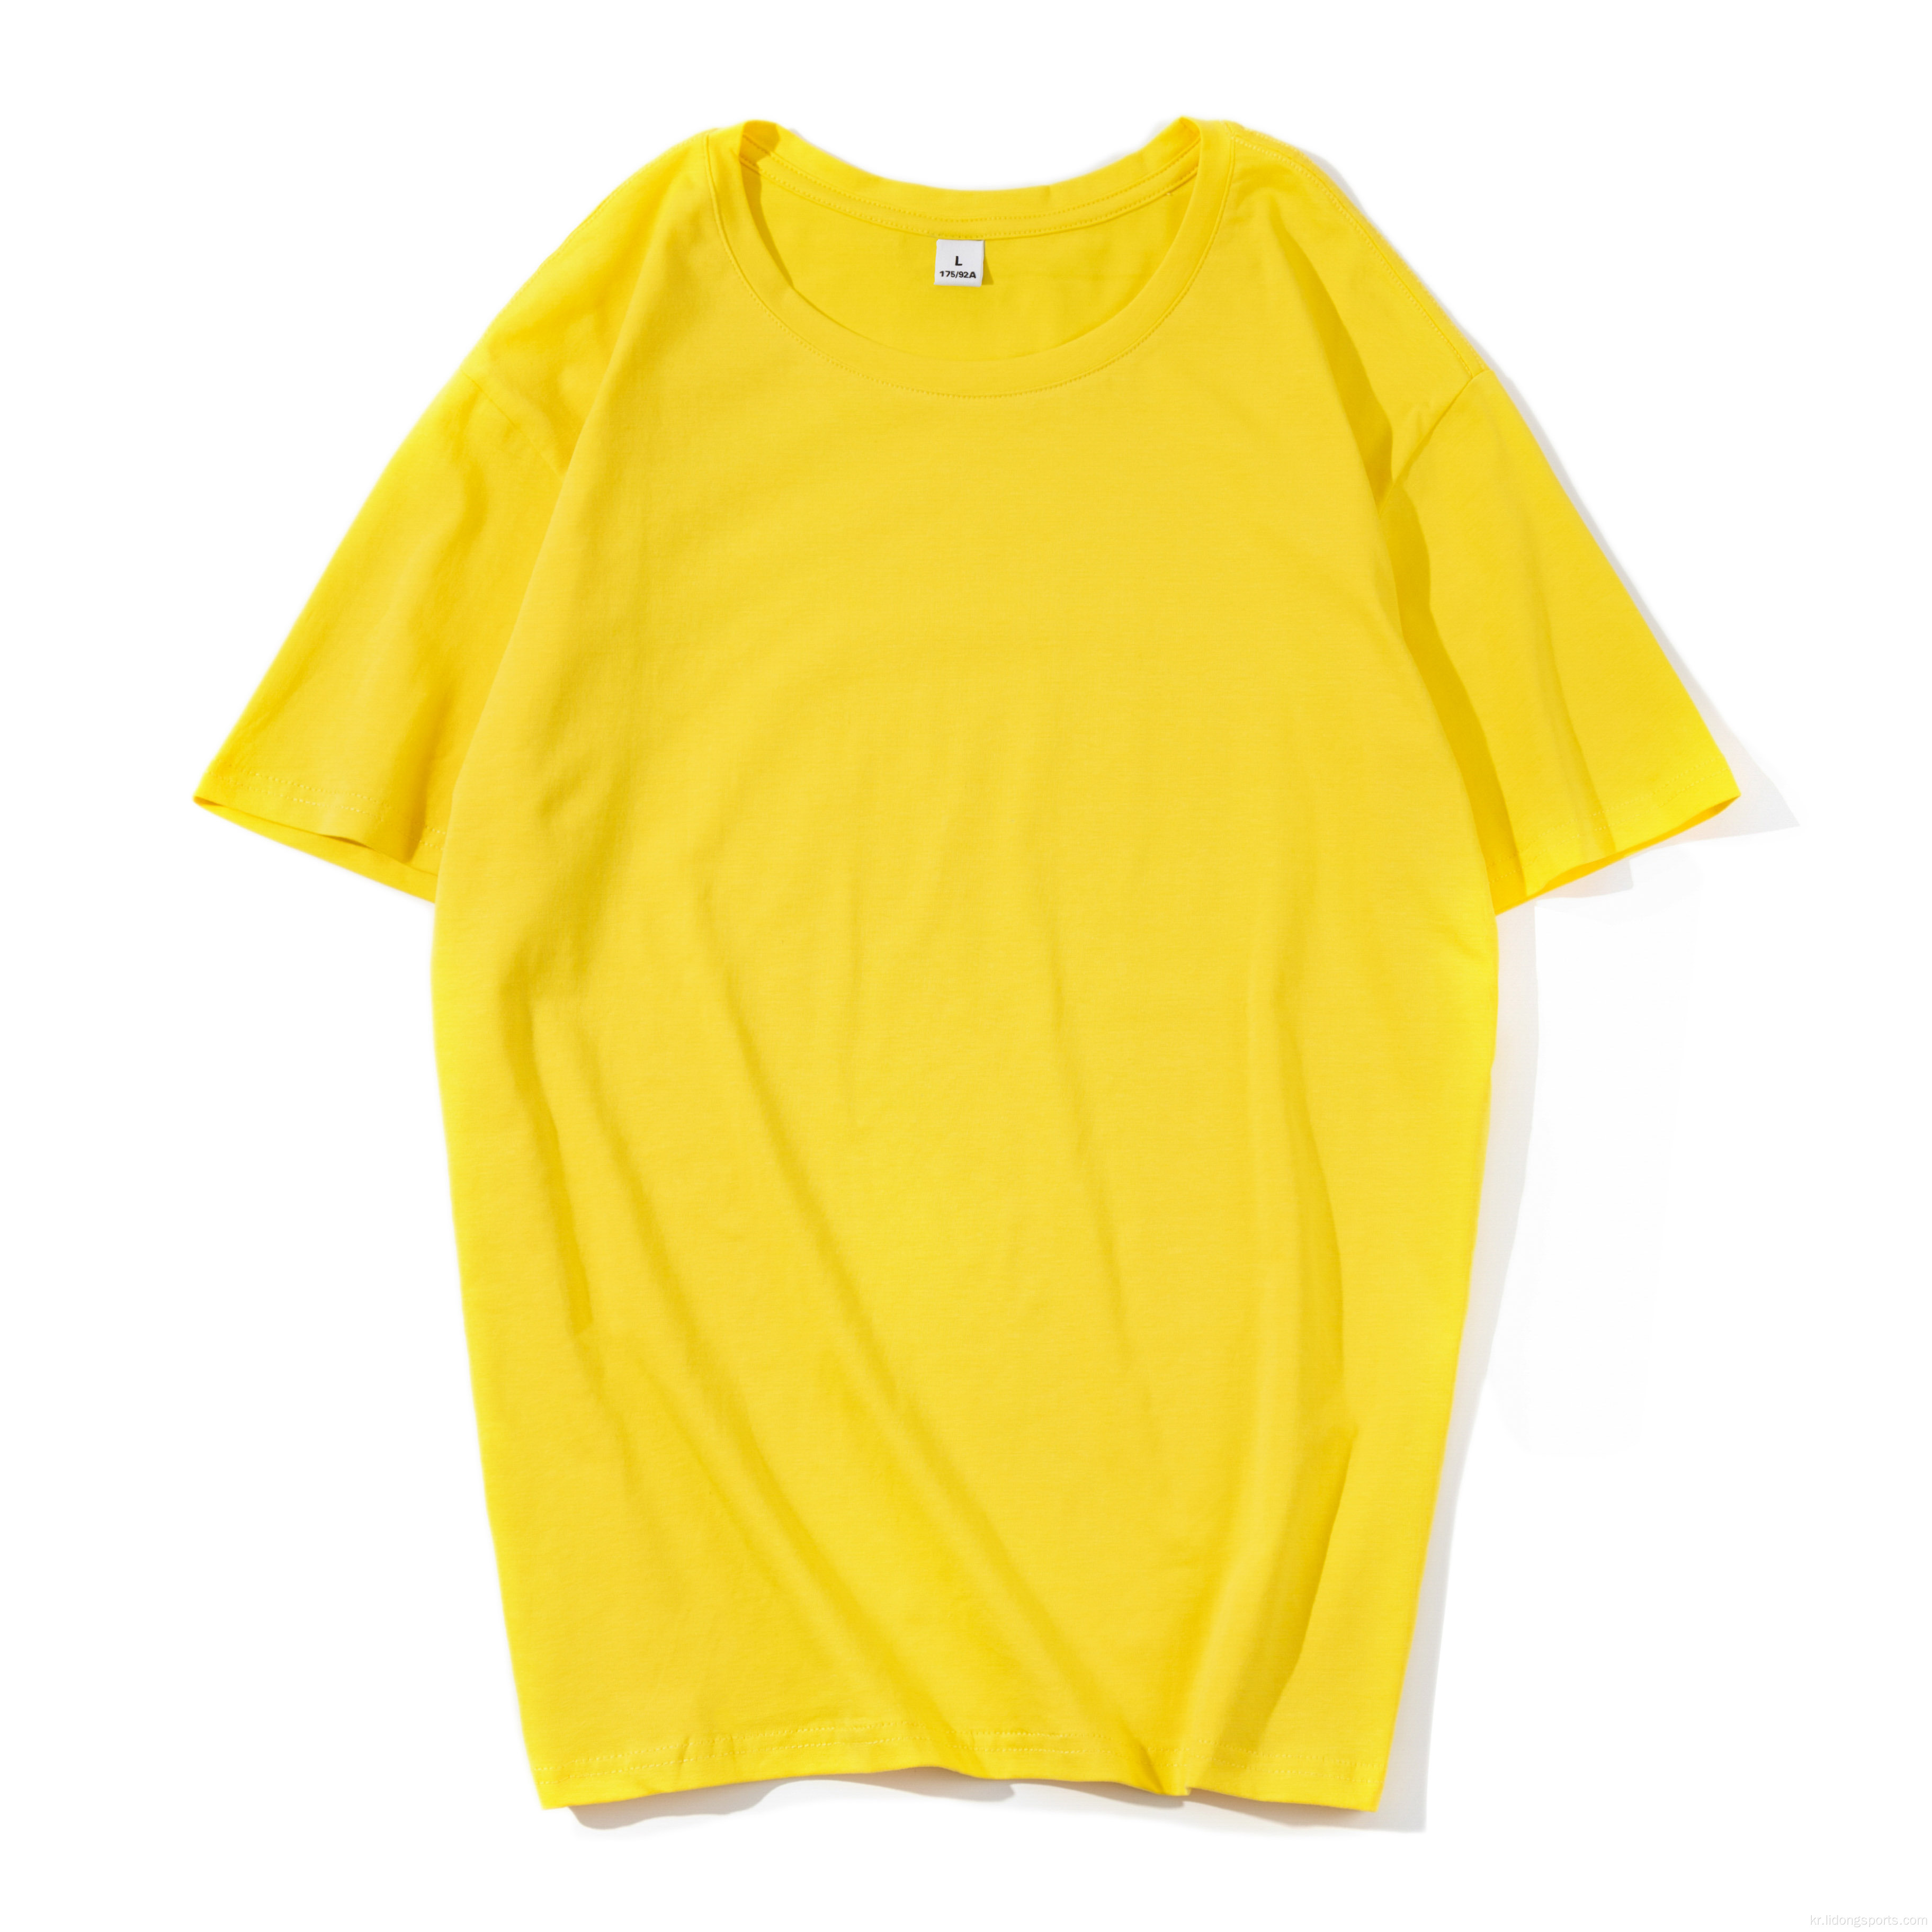 캐주얼 피트니스 여성의 티셔츠 짧은 소매 남자 선물 티셔츠 대형 맞춤 티셔츠